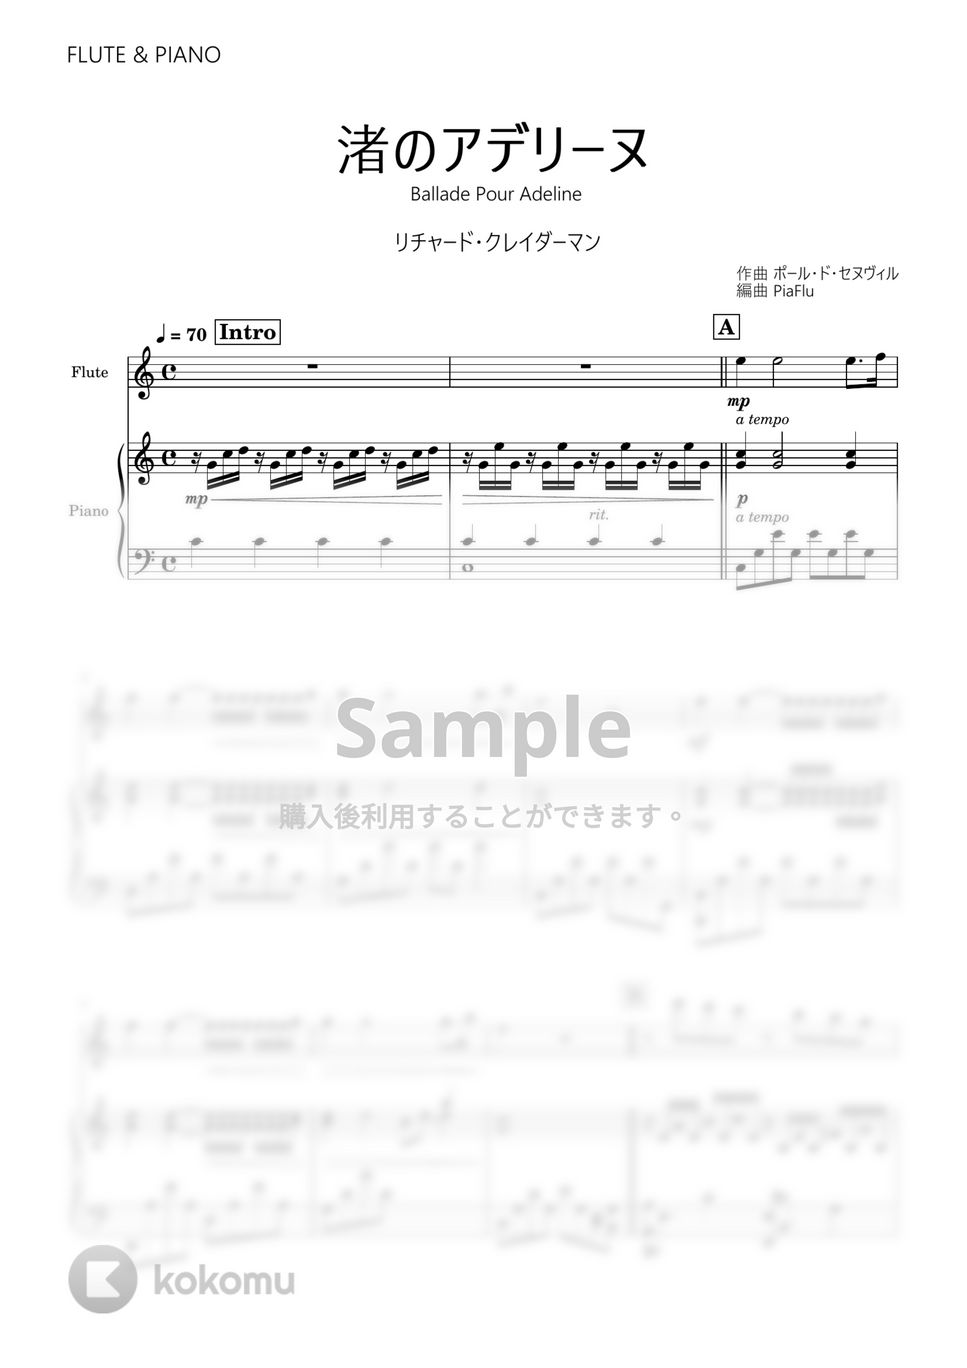 リチャード・クレイダーマン - 渚のアデリーヌ (フルート&ピアノ伴奏) by PiaFlu